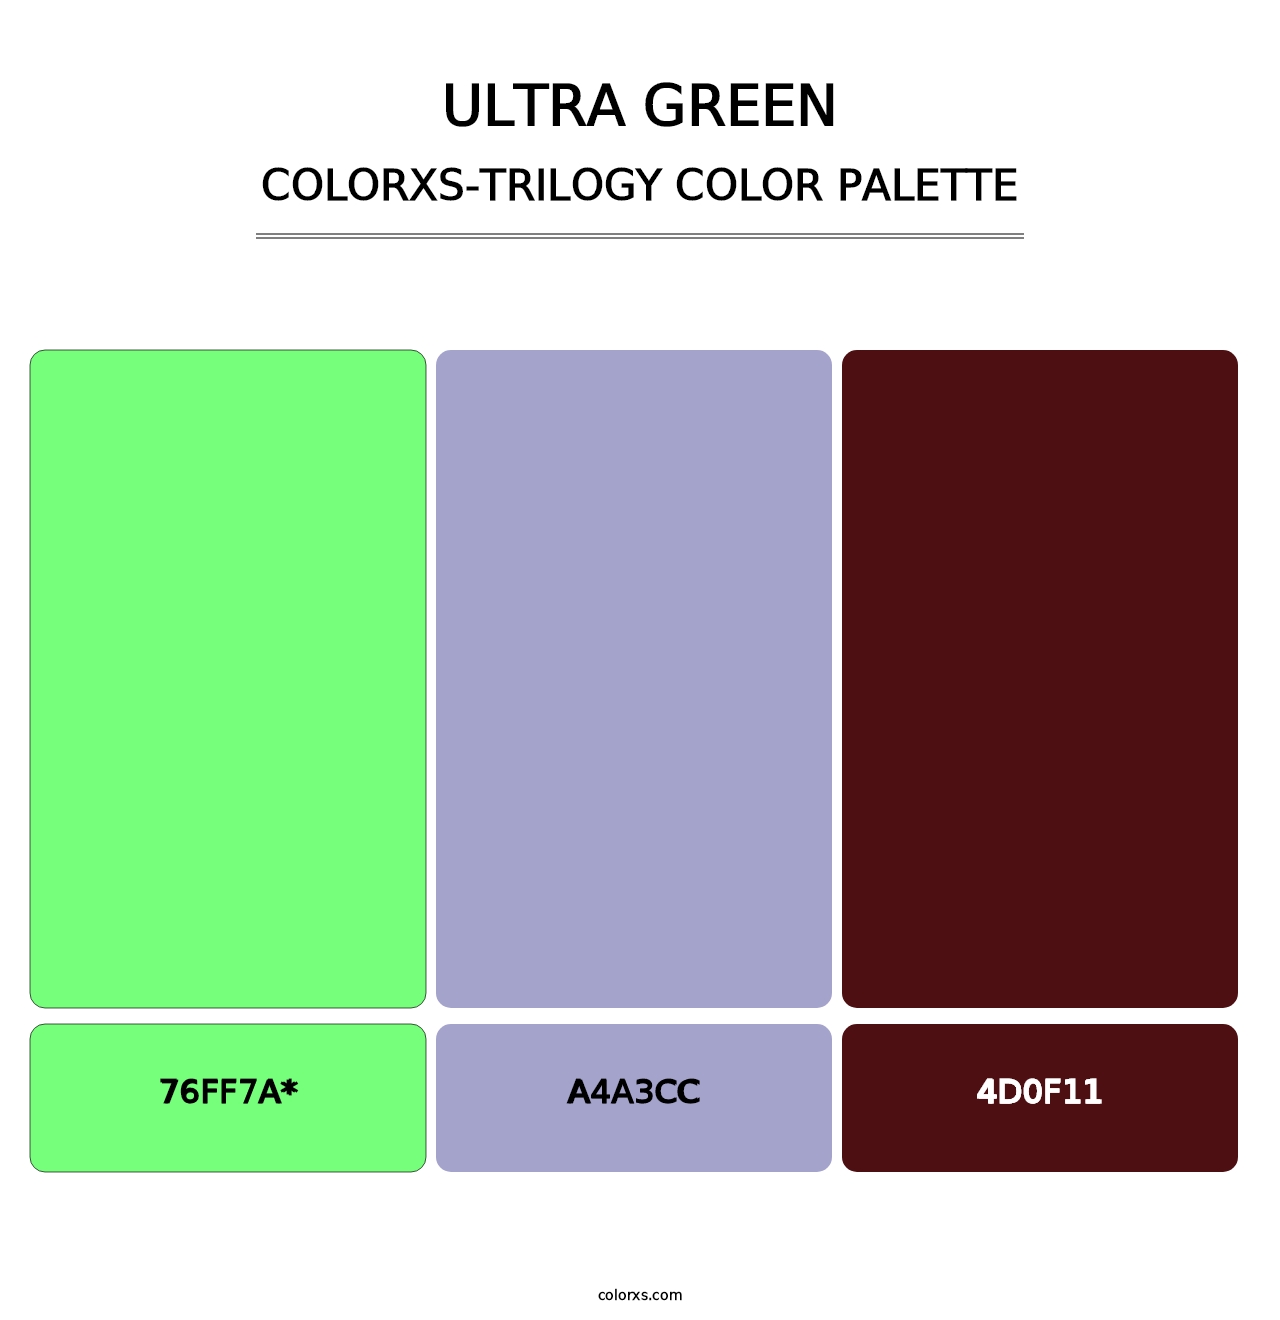 Ultra Green - Colorxs Trilogy Palette